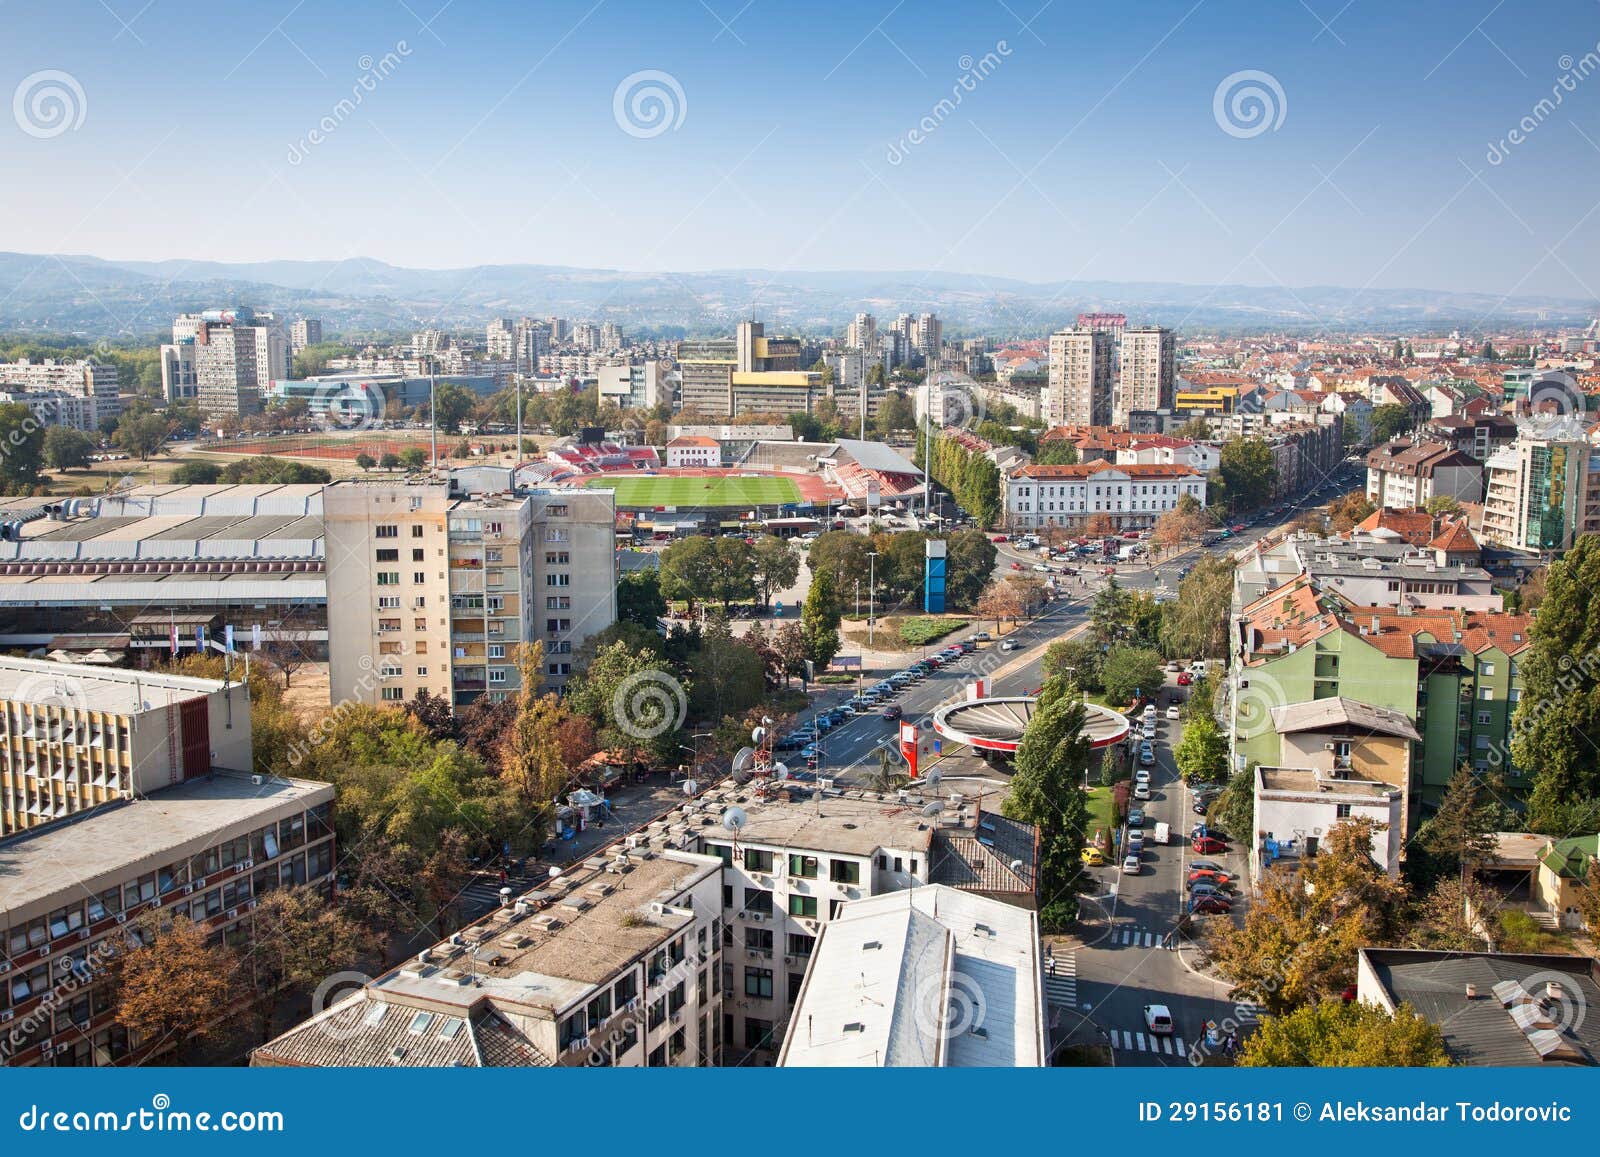 panoramic view of novi sad, serbia